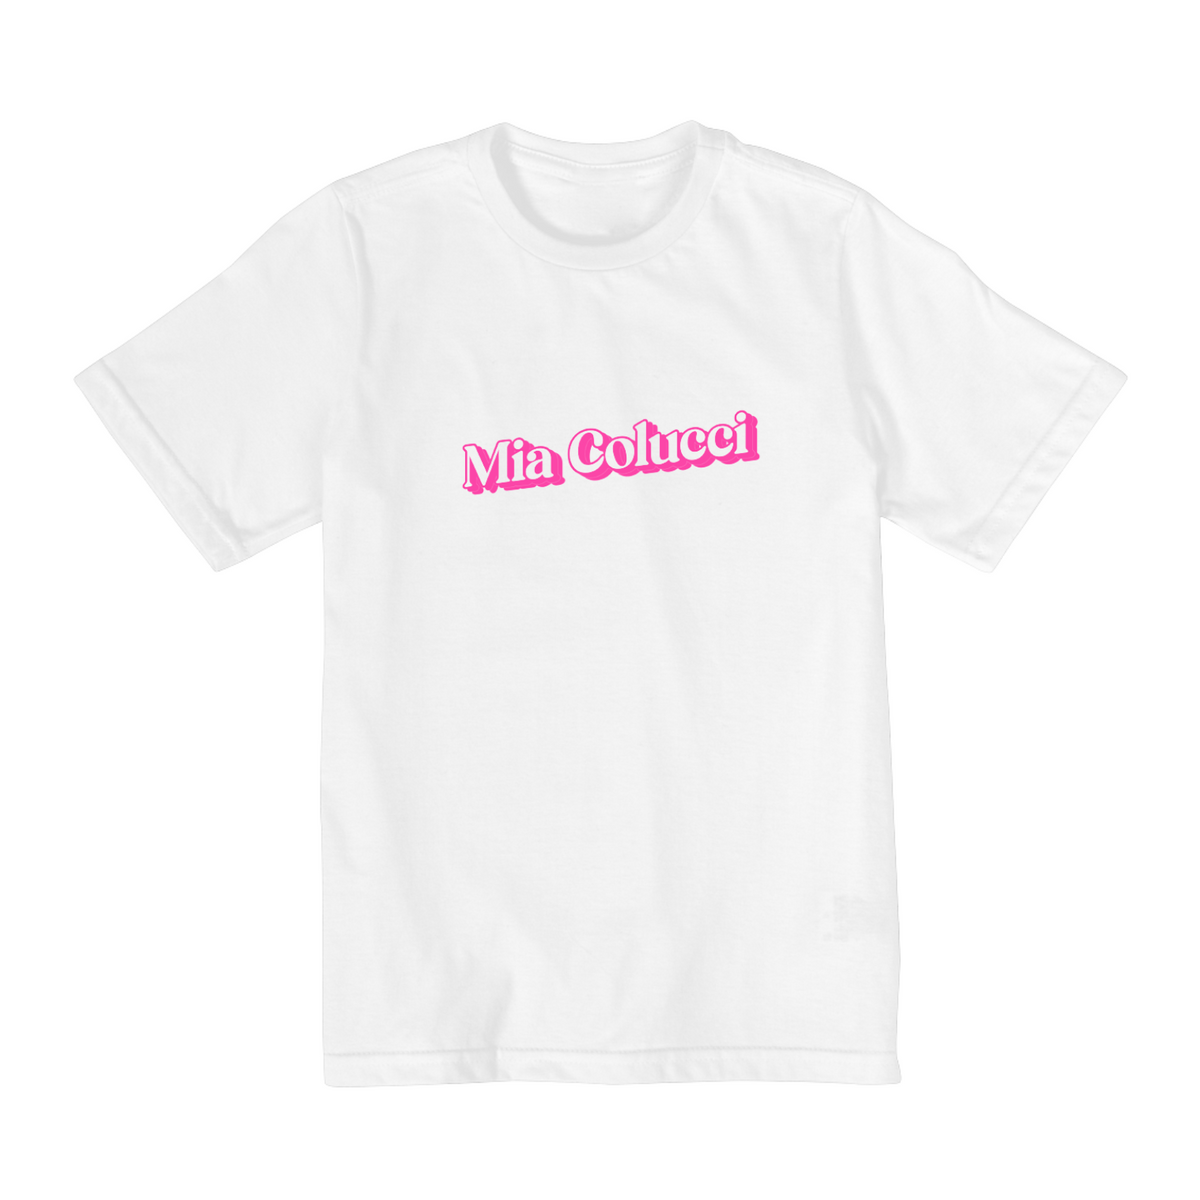 Nome do produto: Camiseta Infantil - Mia Calucci